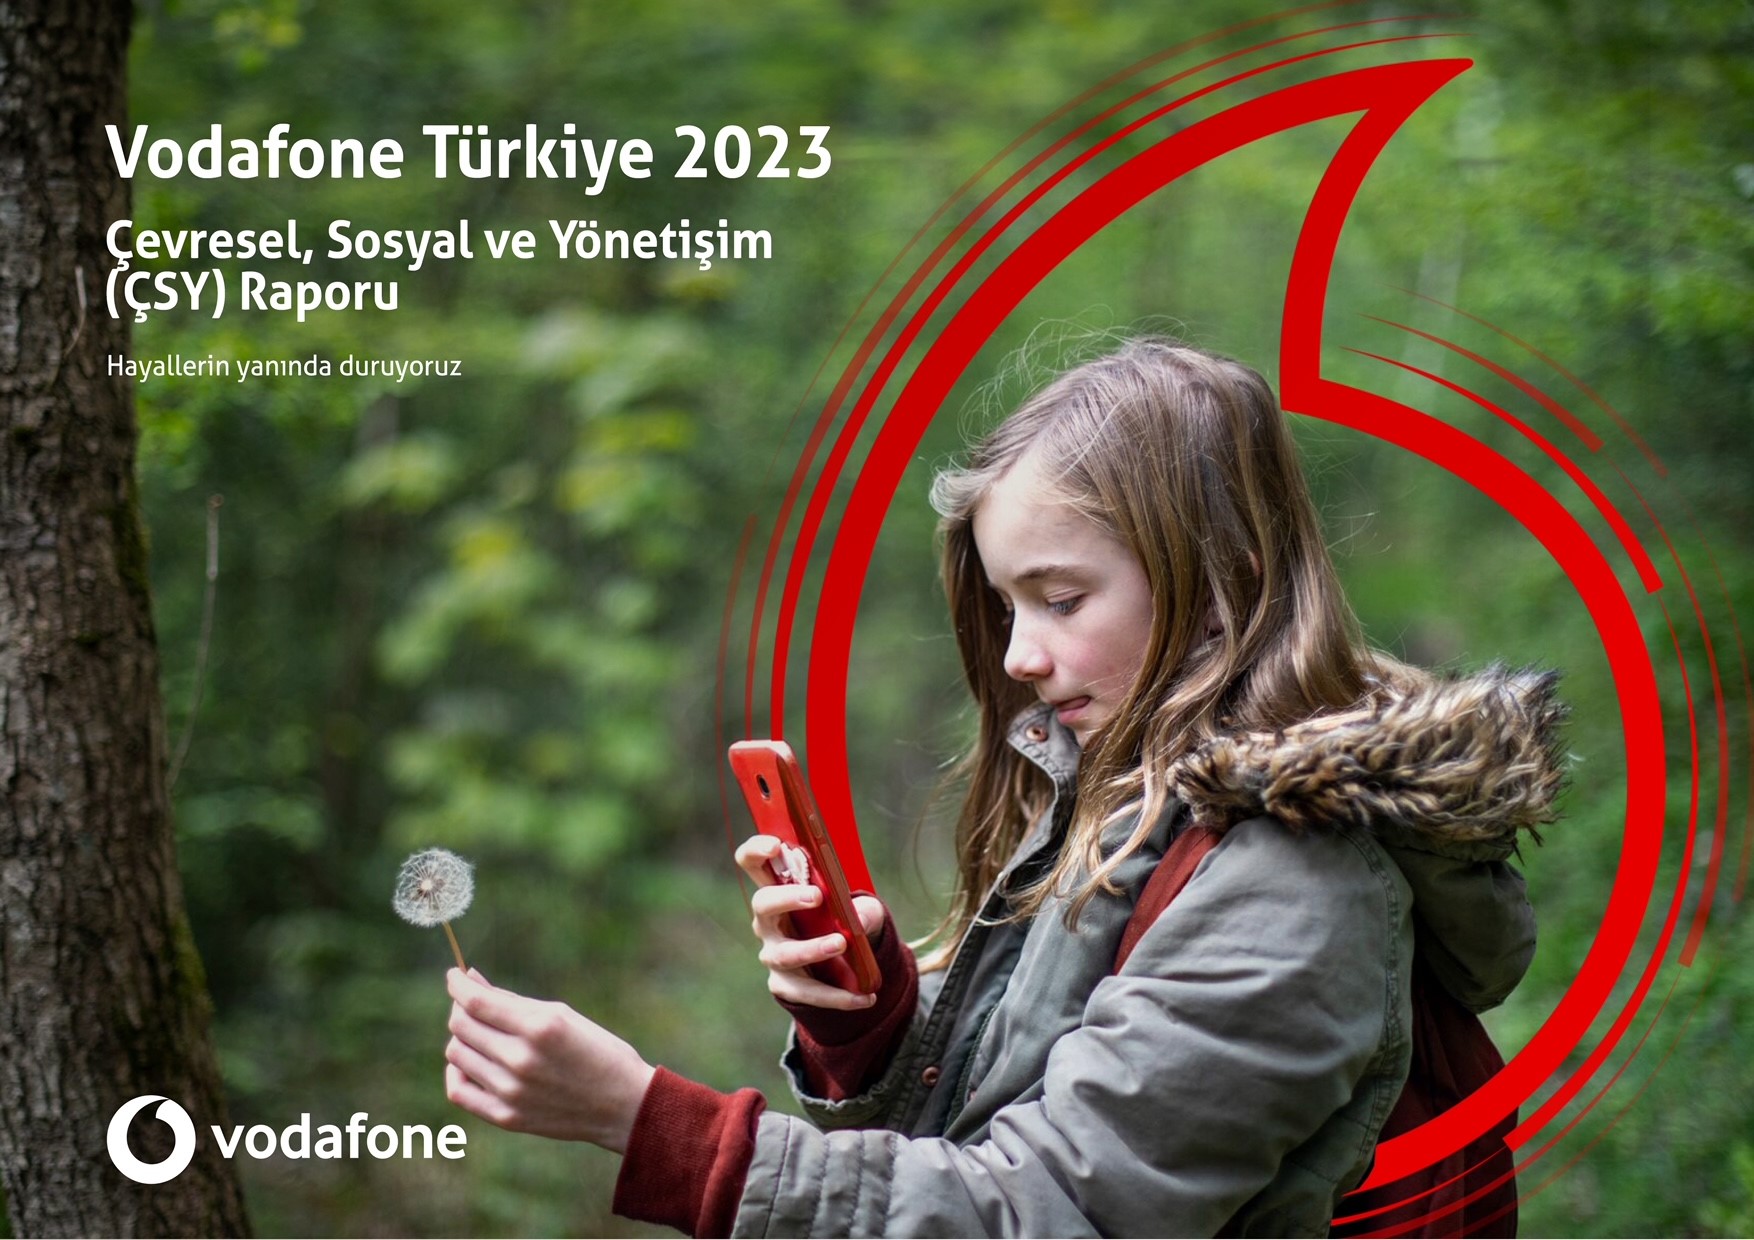 Vodafone Türkiye 2023 Çevresel Sosyal ve Yönetişim (ÇSY) raporu